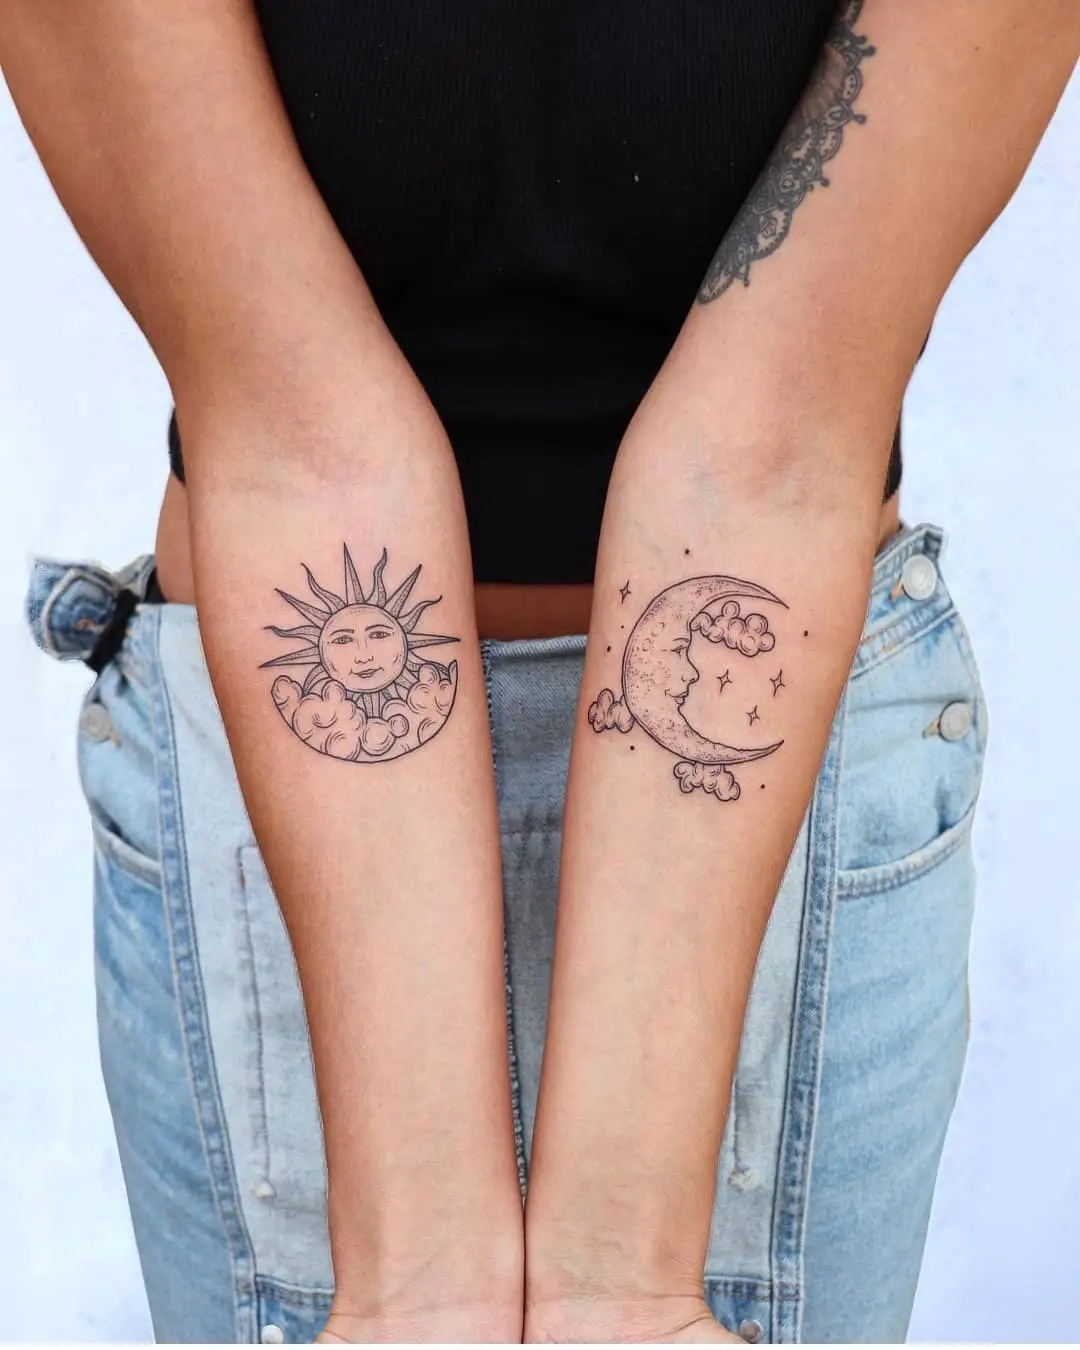 Friendship tattoo ideas